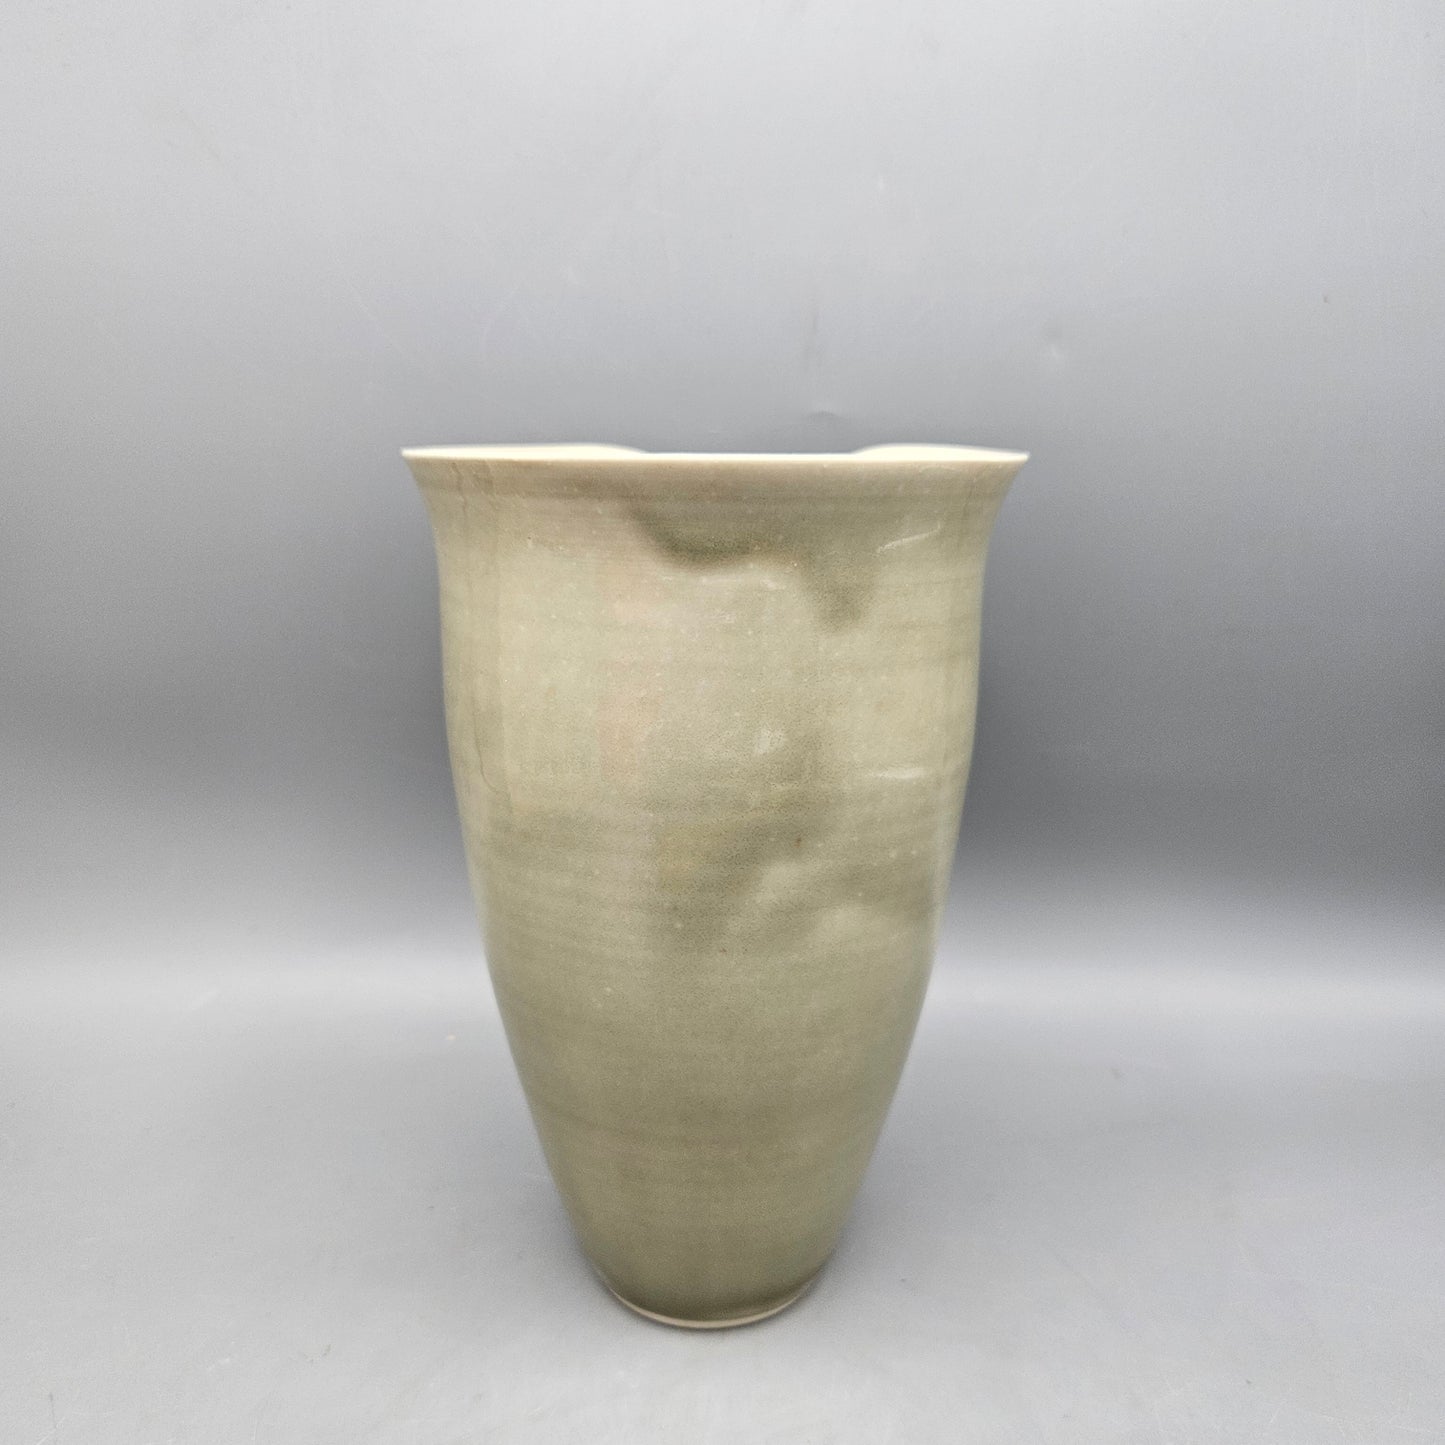 Signed Sage Green Art Pottery Vase with Floral Design